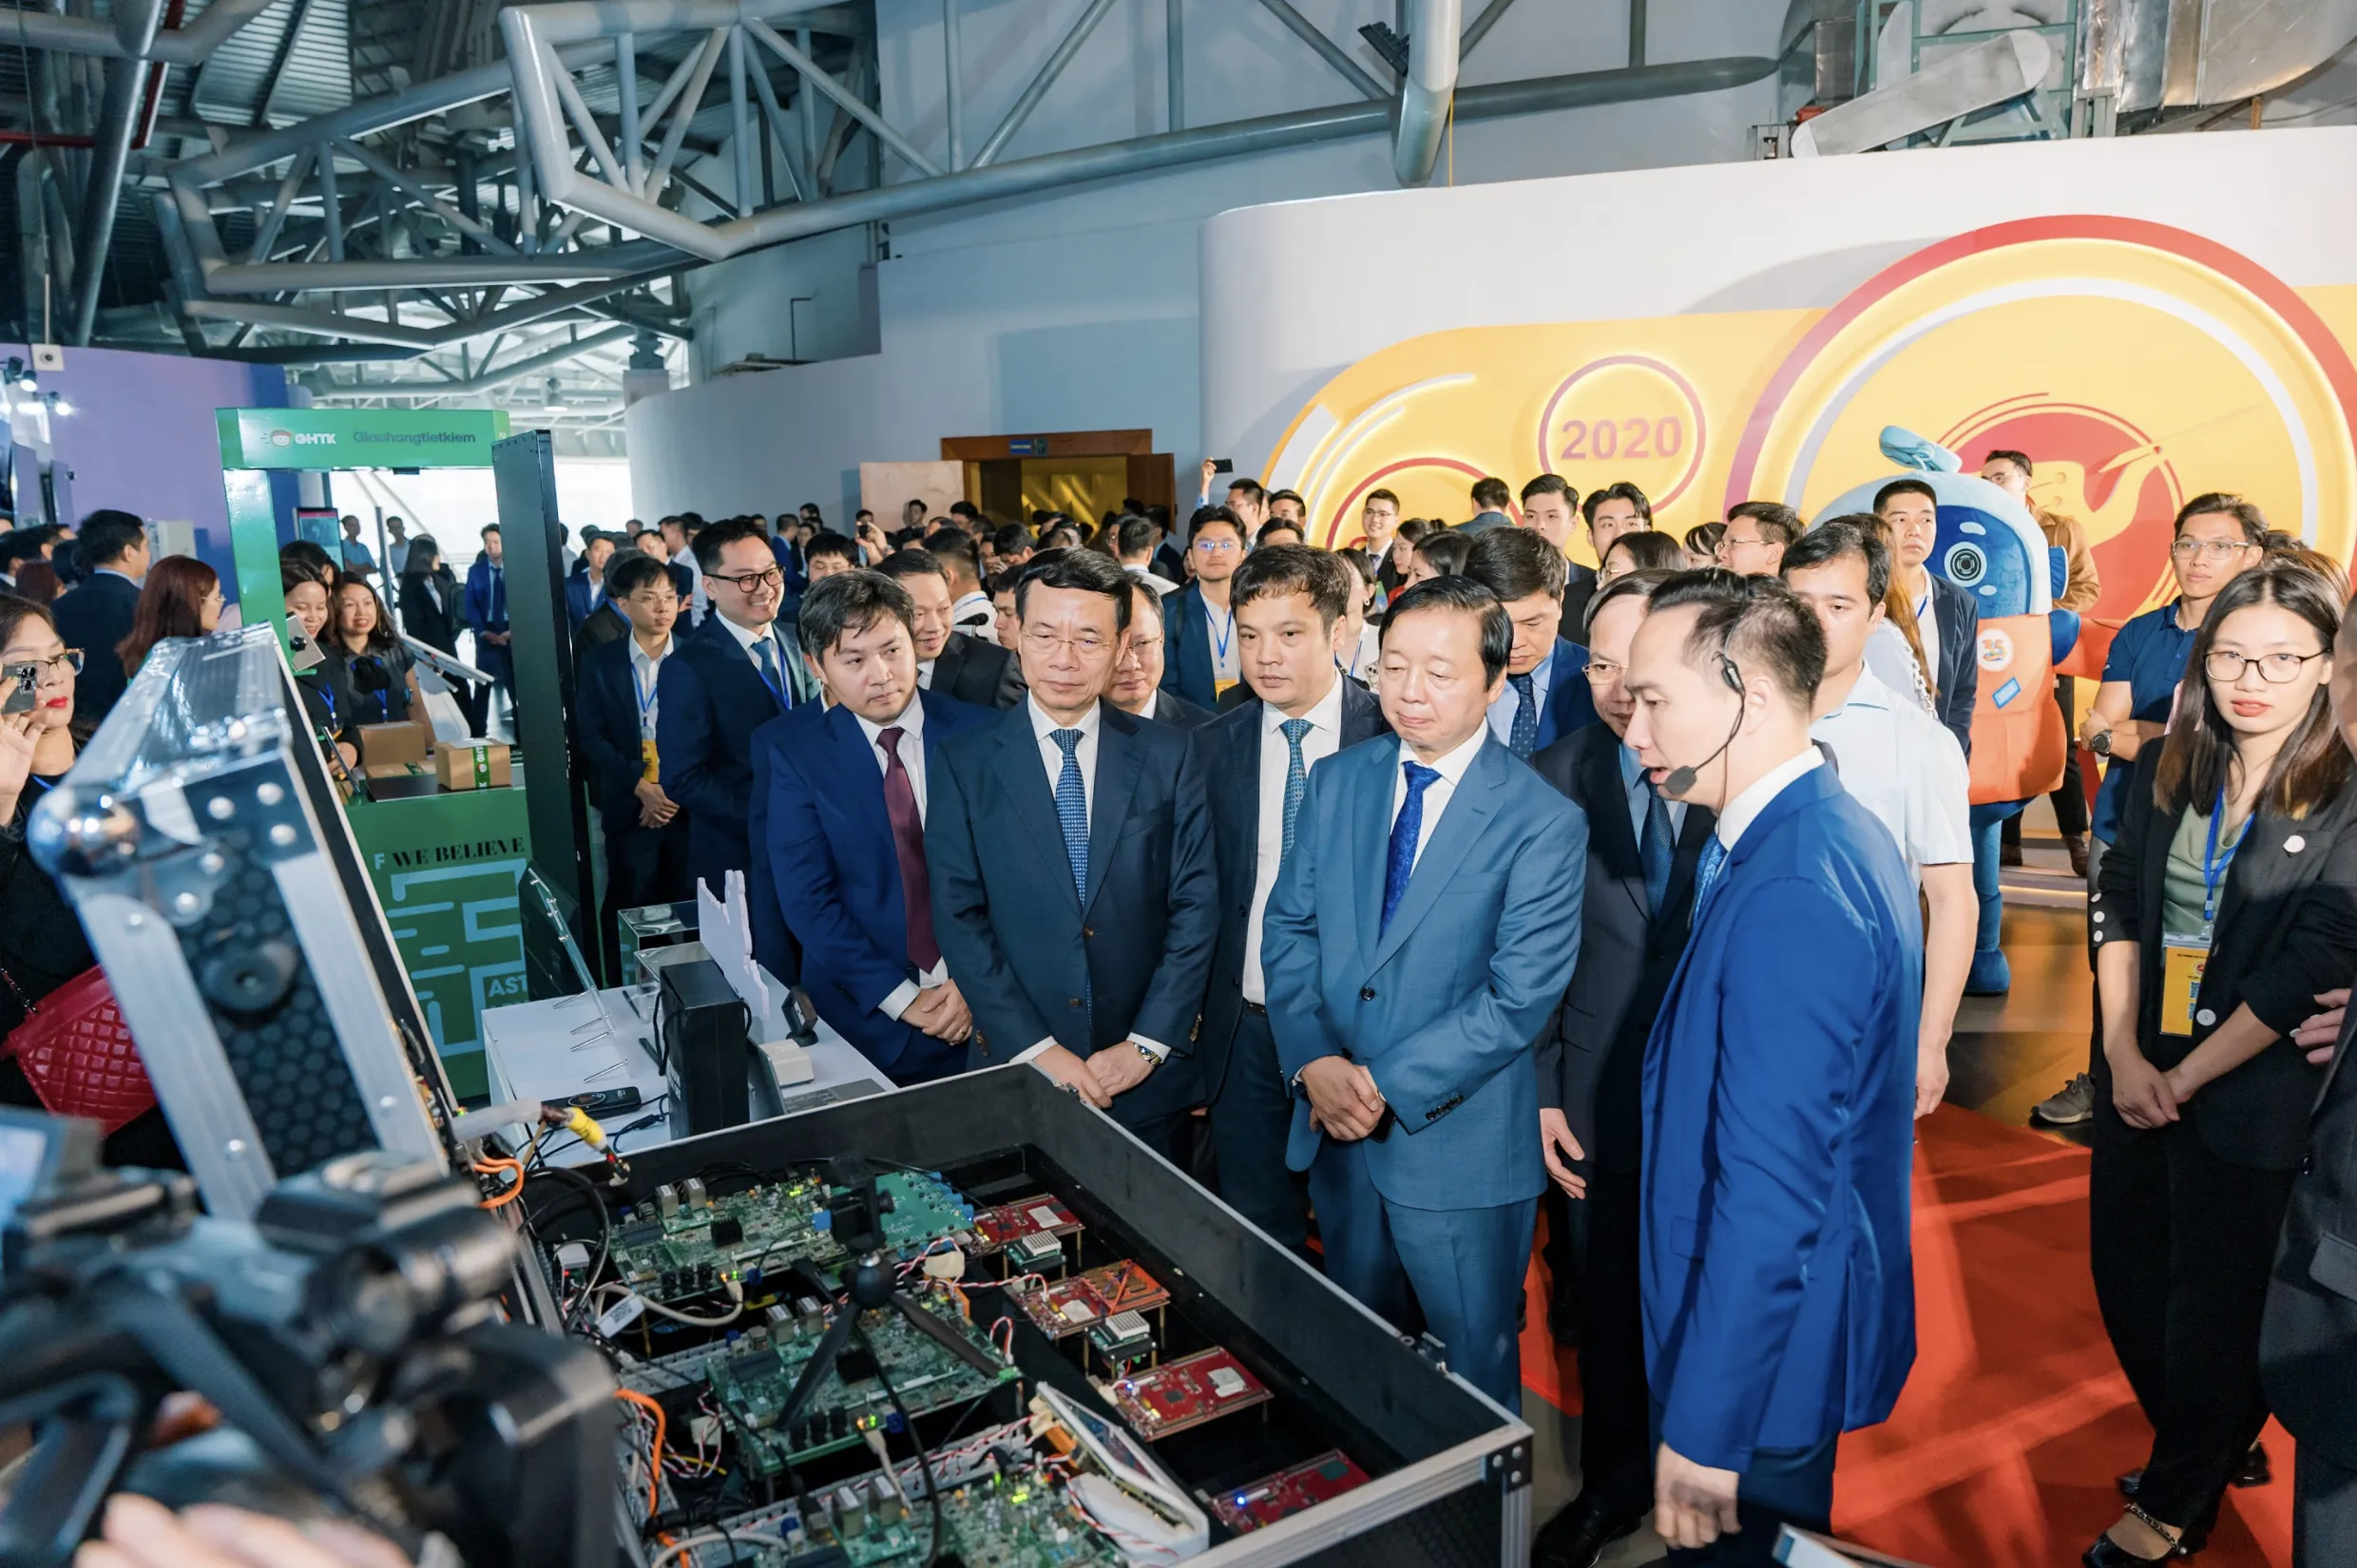 Tổng giám đốc FPT: “Việt Nam có lợi thế để nắm bắt cơ hội vàng trong ngành chip bán dẫn thế giới”